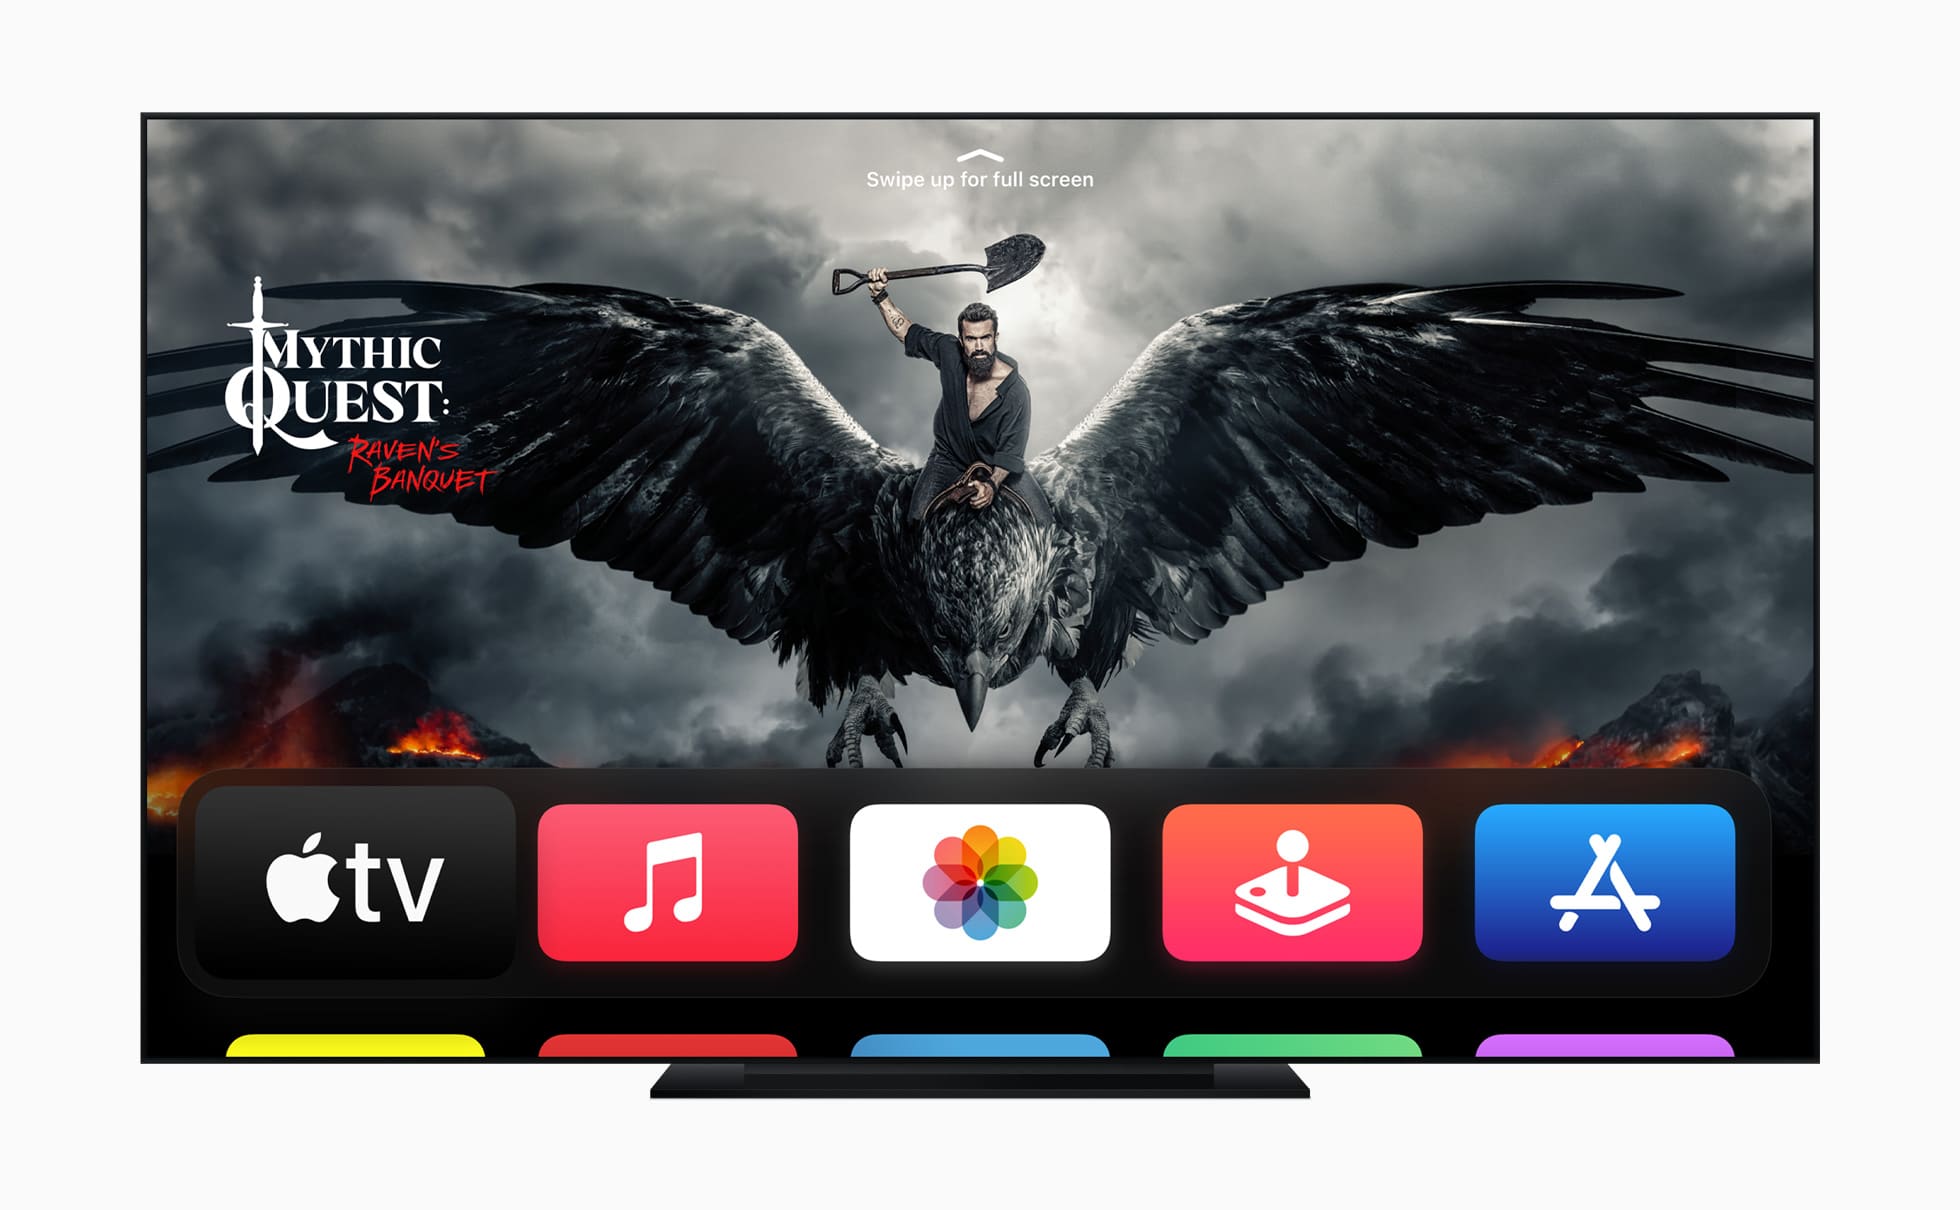 Tela de Início do tvOS em Apple TV 4K com a série "Mythic Quest"